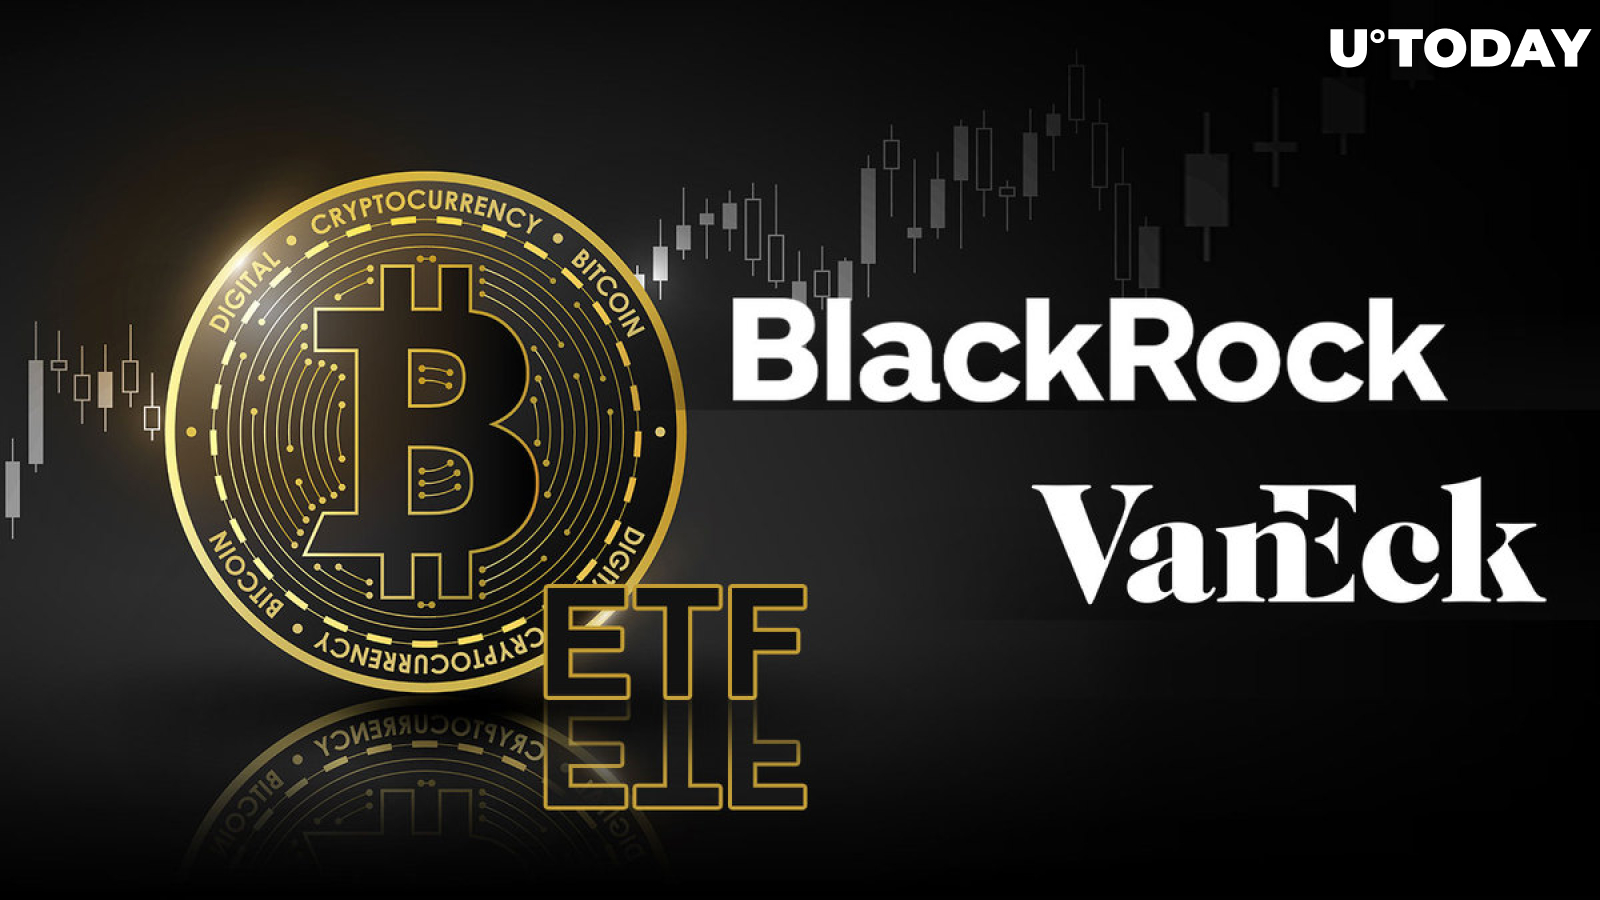 Wyścig Bitcoin ETF pozostaje zgodny ze zaktualizowanym zgłoszeniem BlackRock